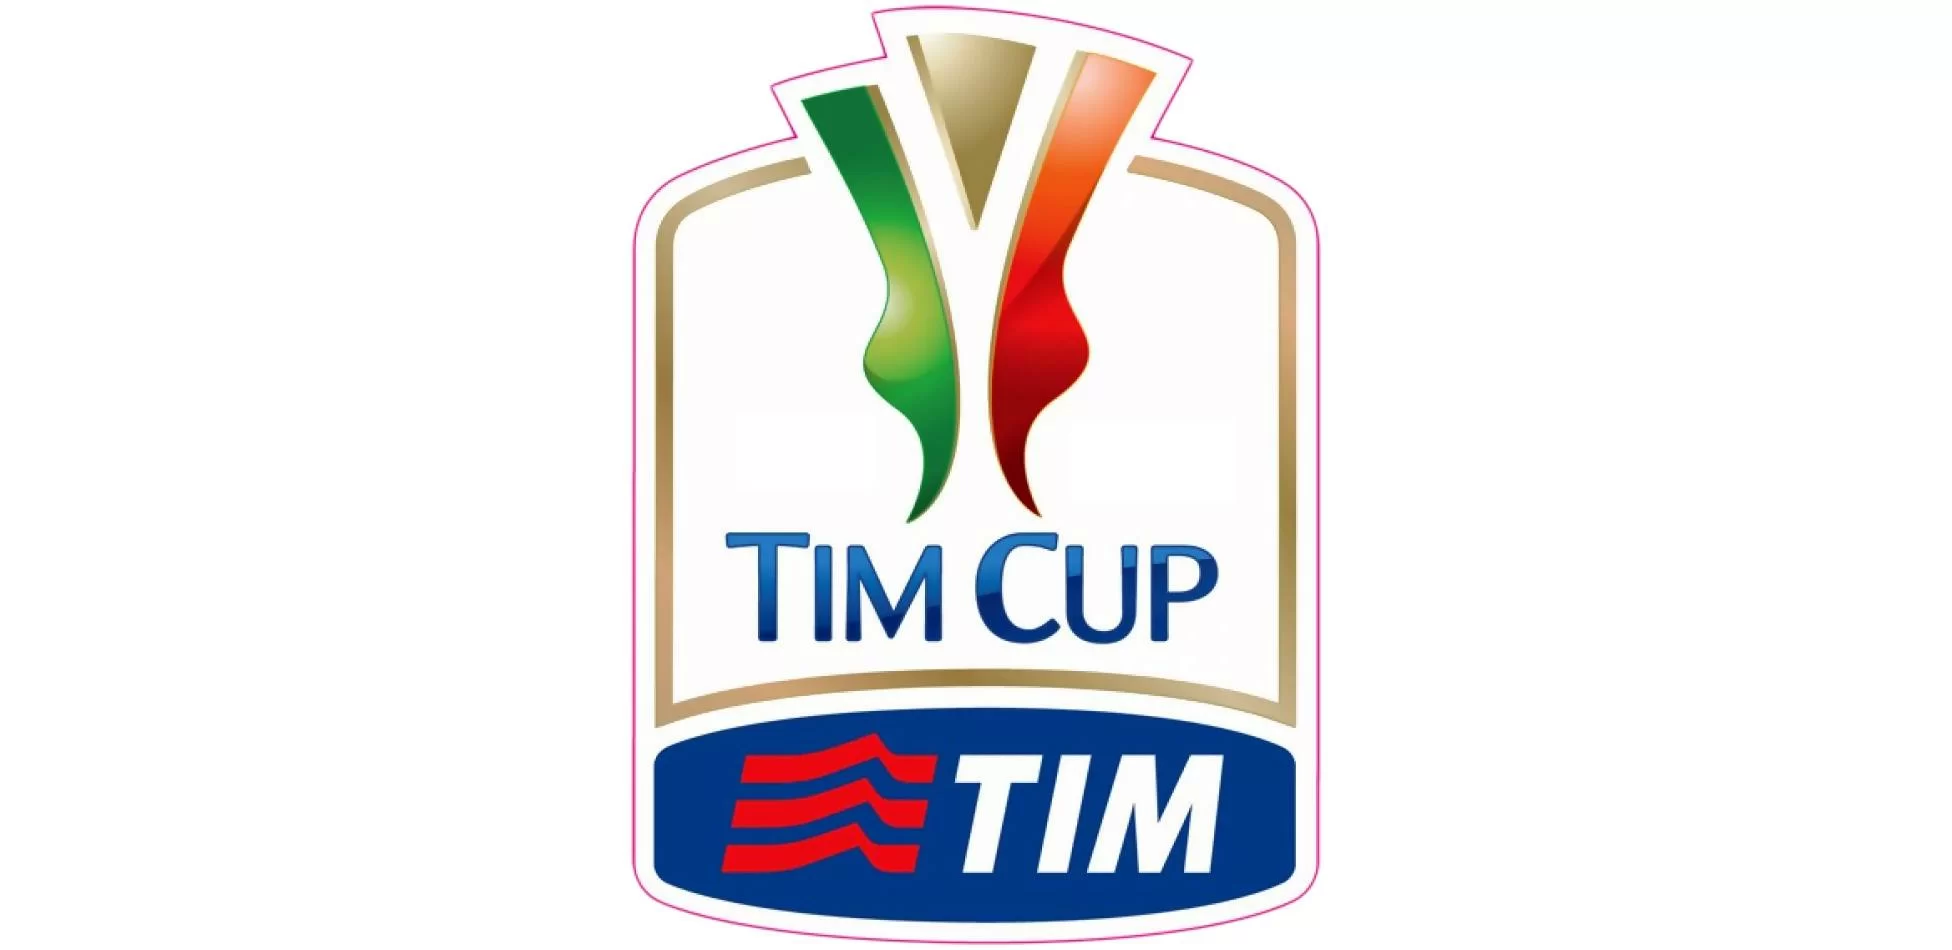 Coppa Italia, date e orari del terzo turno: quando giocheranno le possibili rivali del Milan